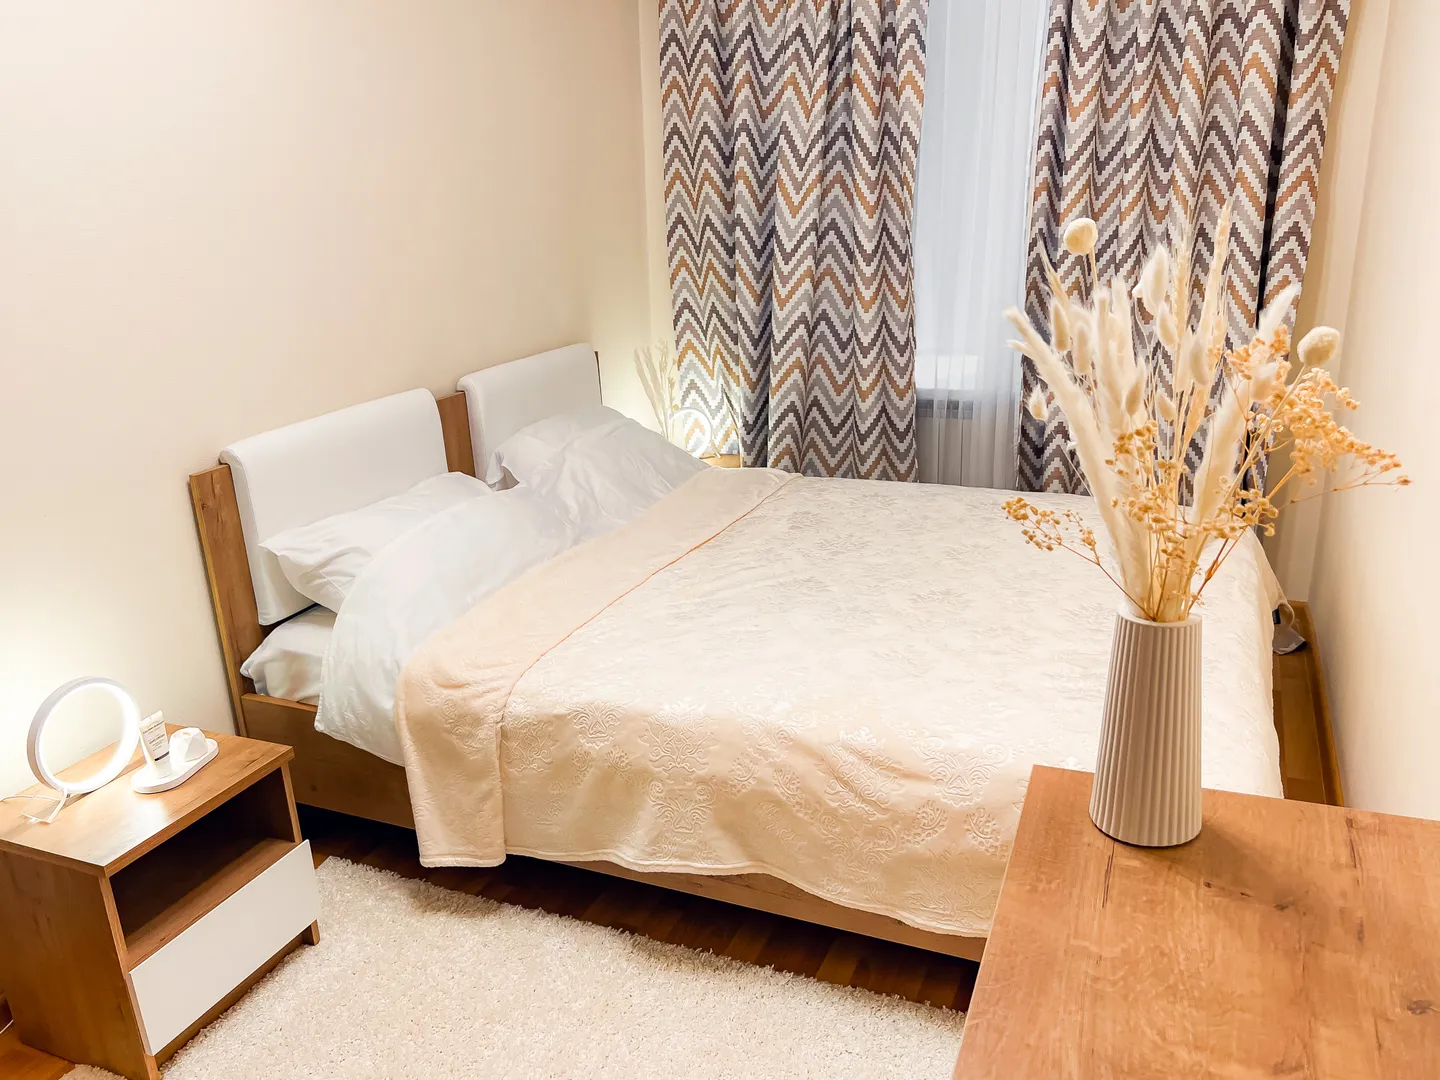 Спальня в теплых оттенках с кондиционером и 2 видами штор (рулонные + раздвижные). Мягкое постельное белье, возможность настраивать комфортную температуру и освещенность. Оборудована гардеробной комнатой